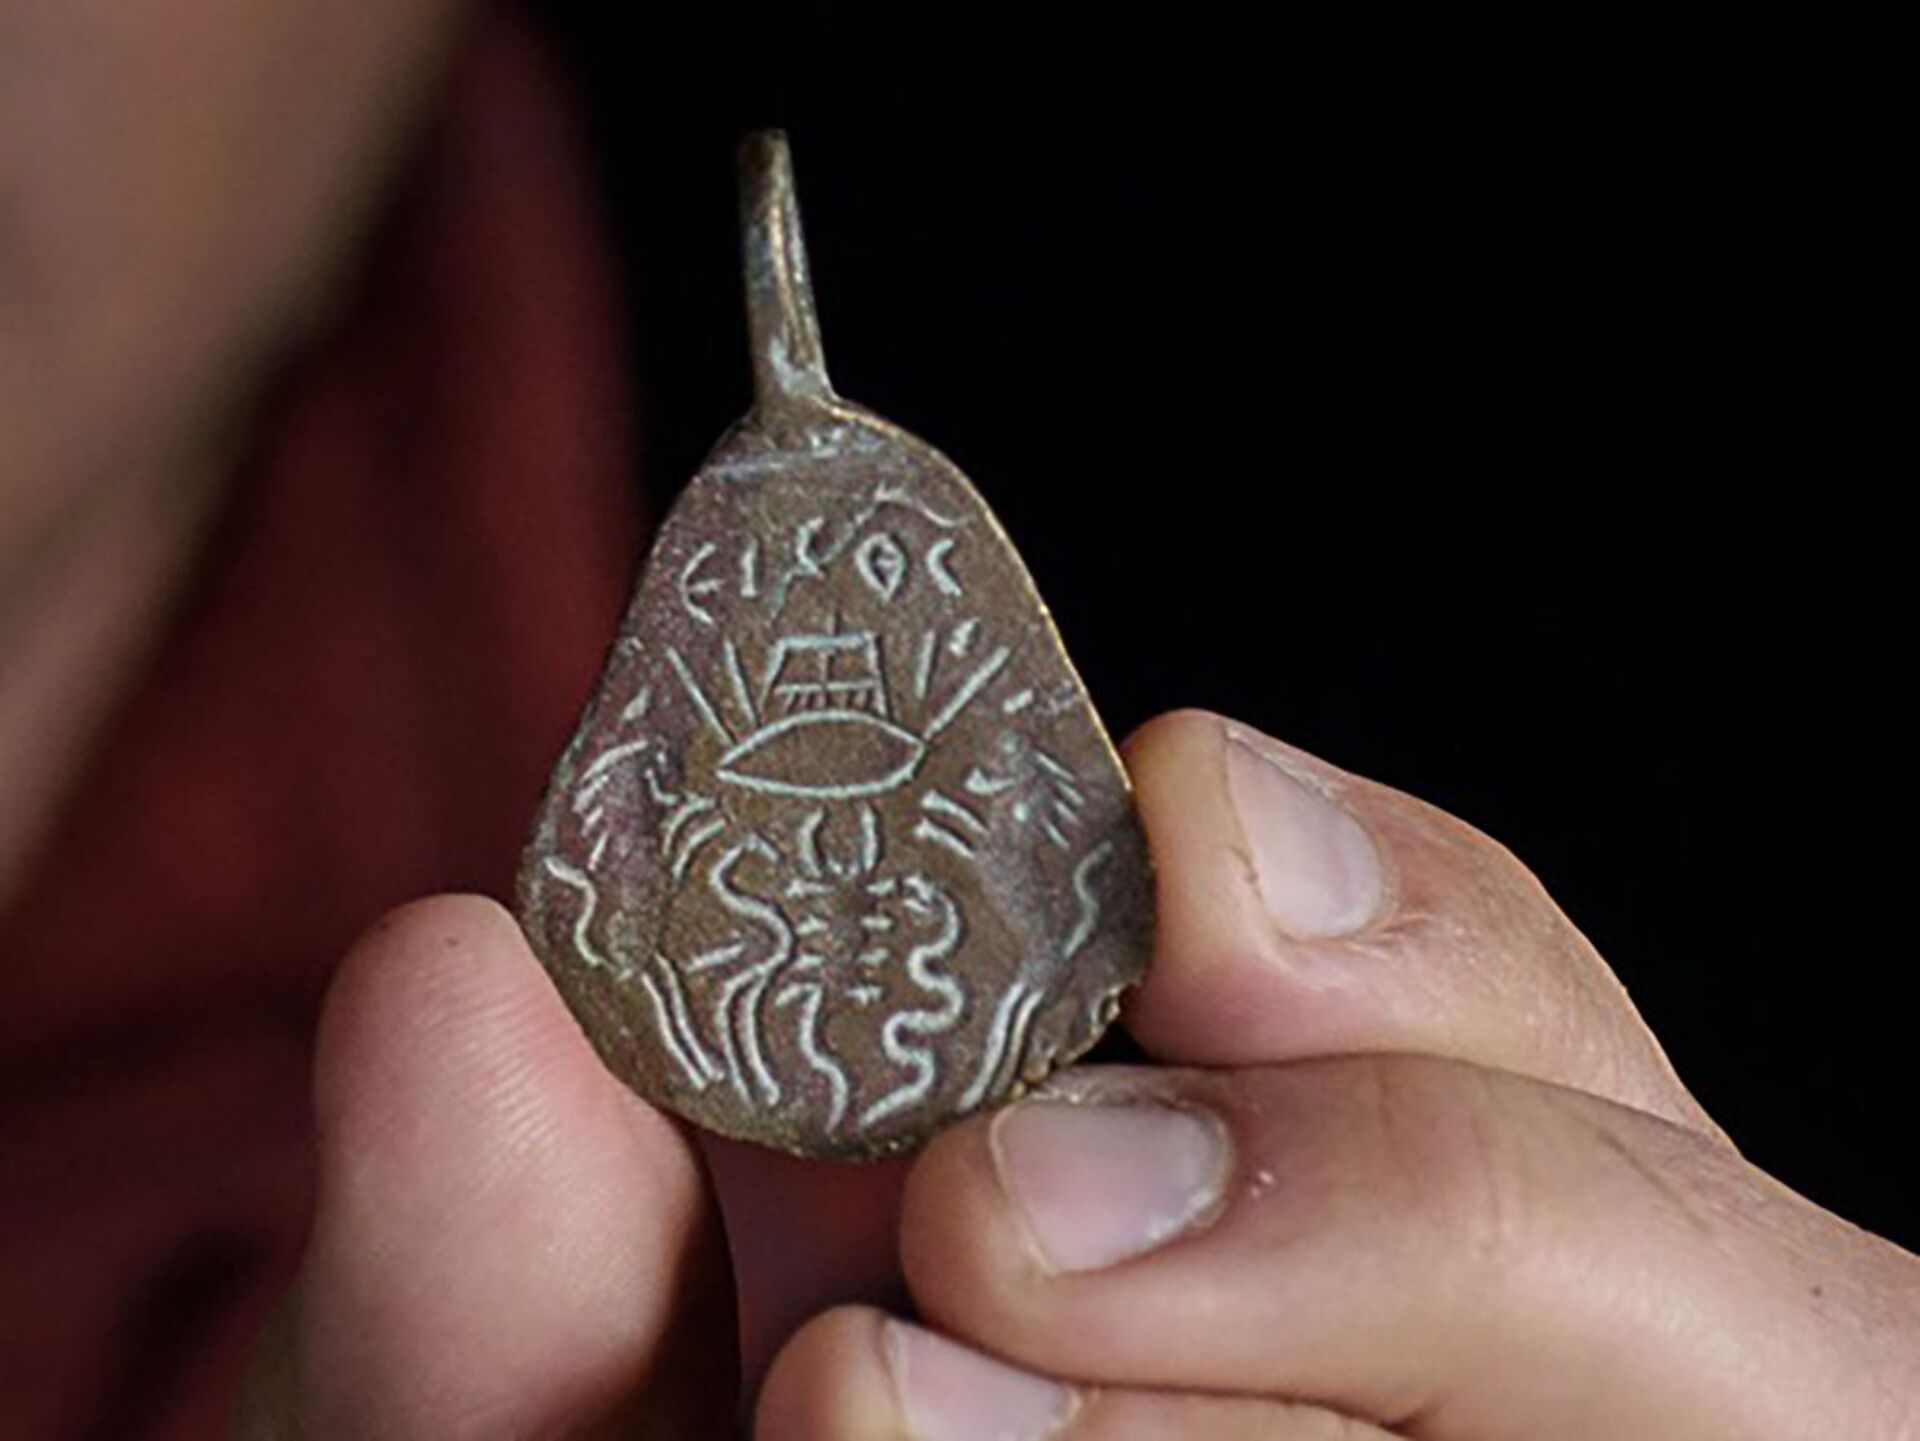 FOTOS revelam amuleto de 1.500 anos que protegia mulheres e crianças em Israel - Sputnik Brasil, 1920, 02.06.2021